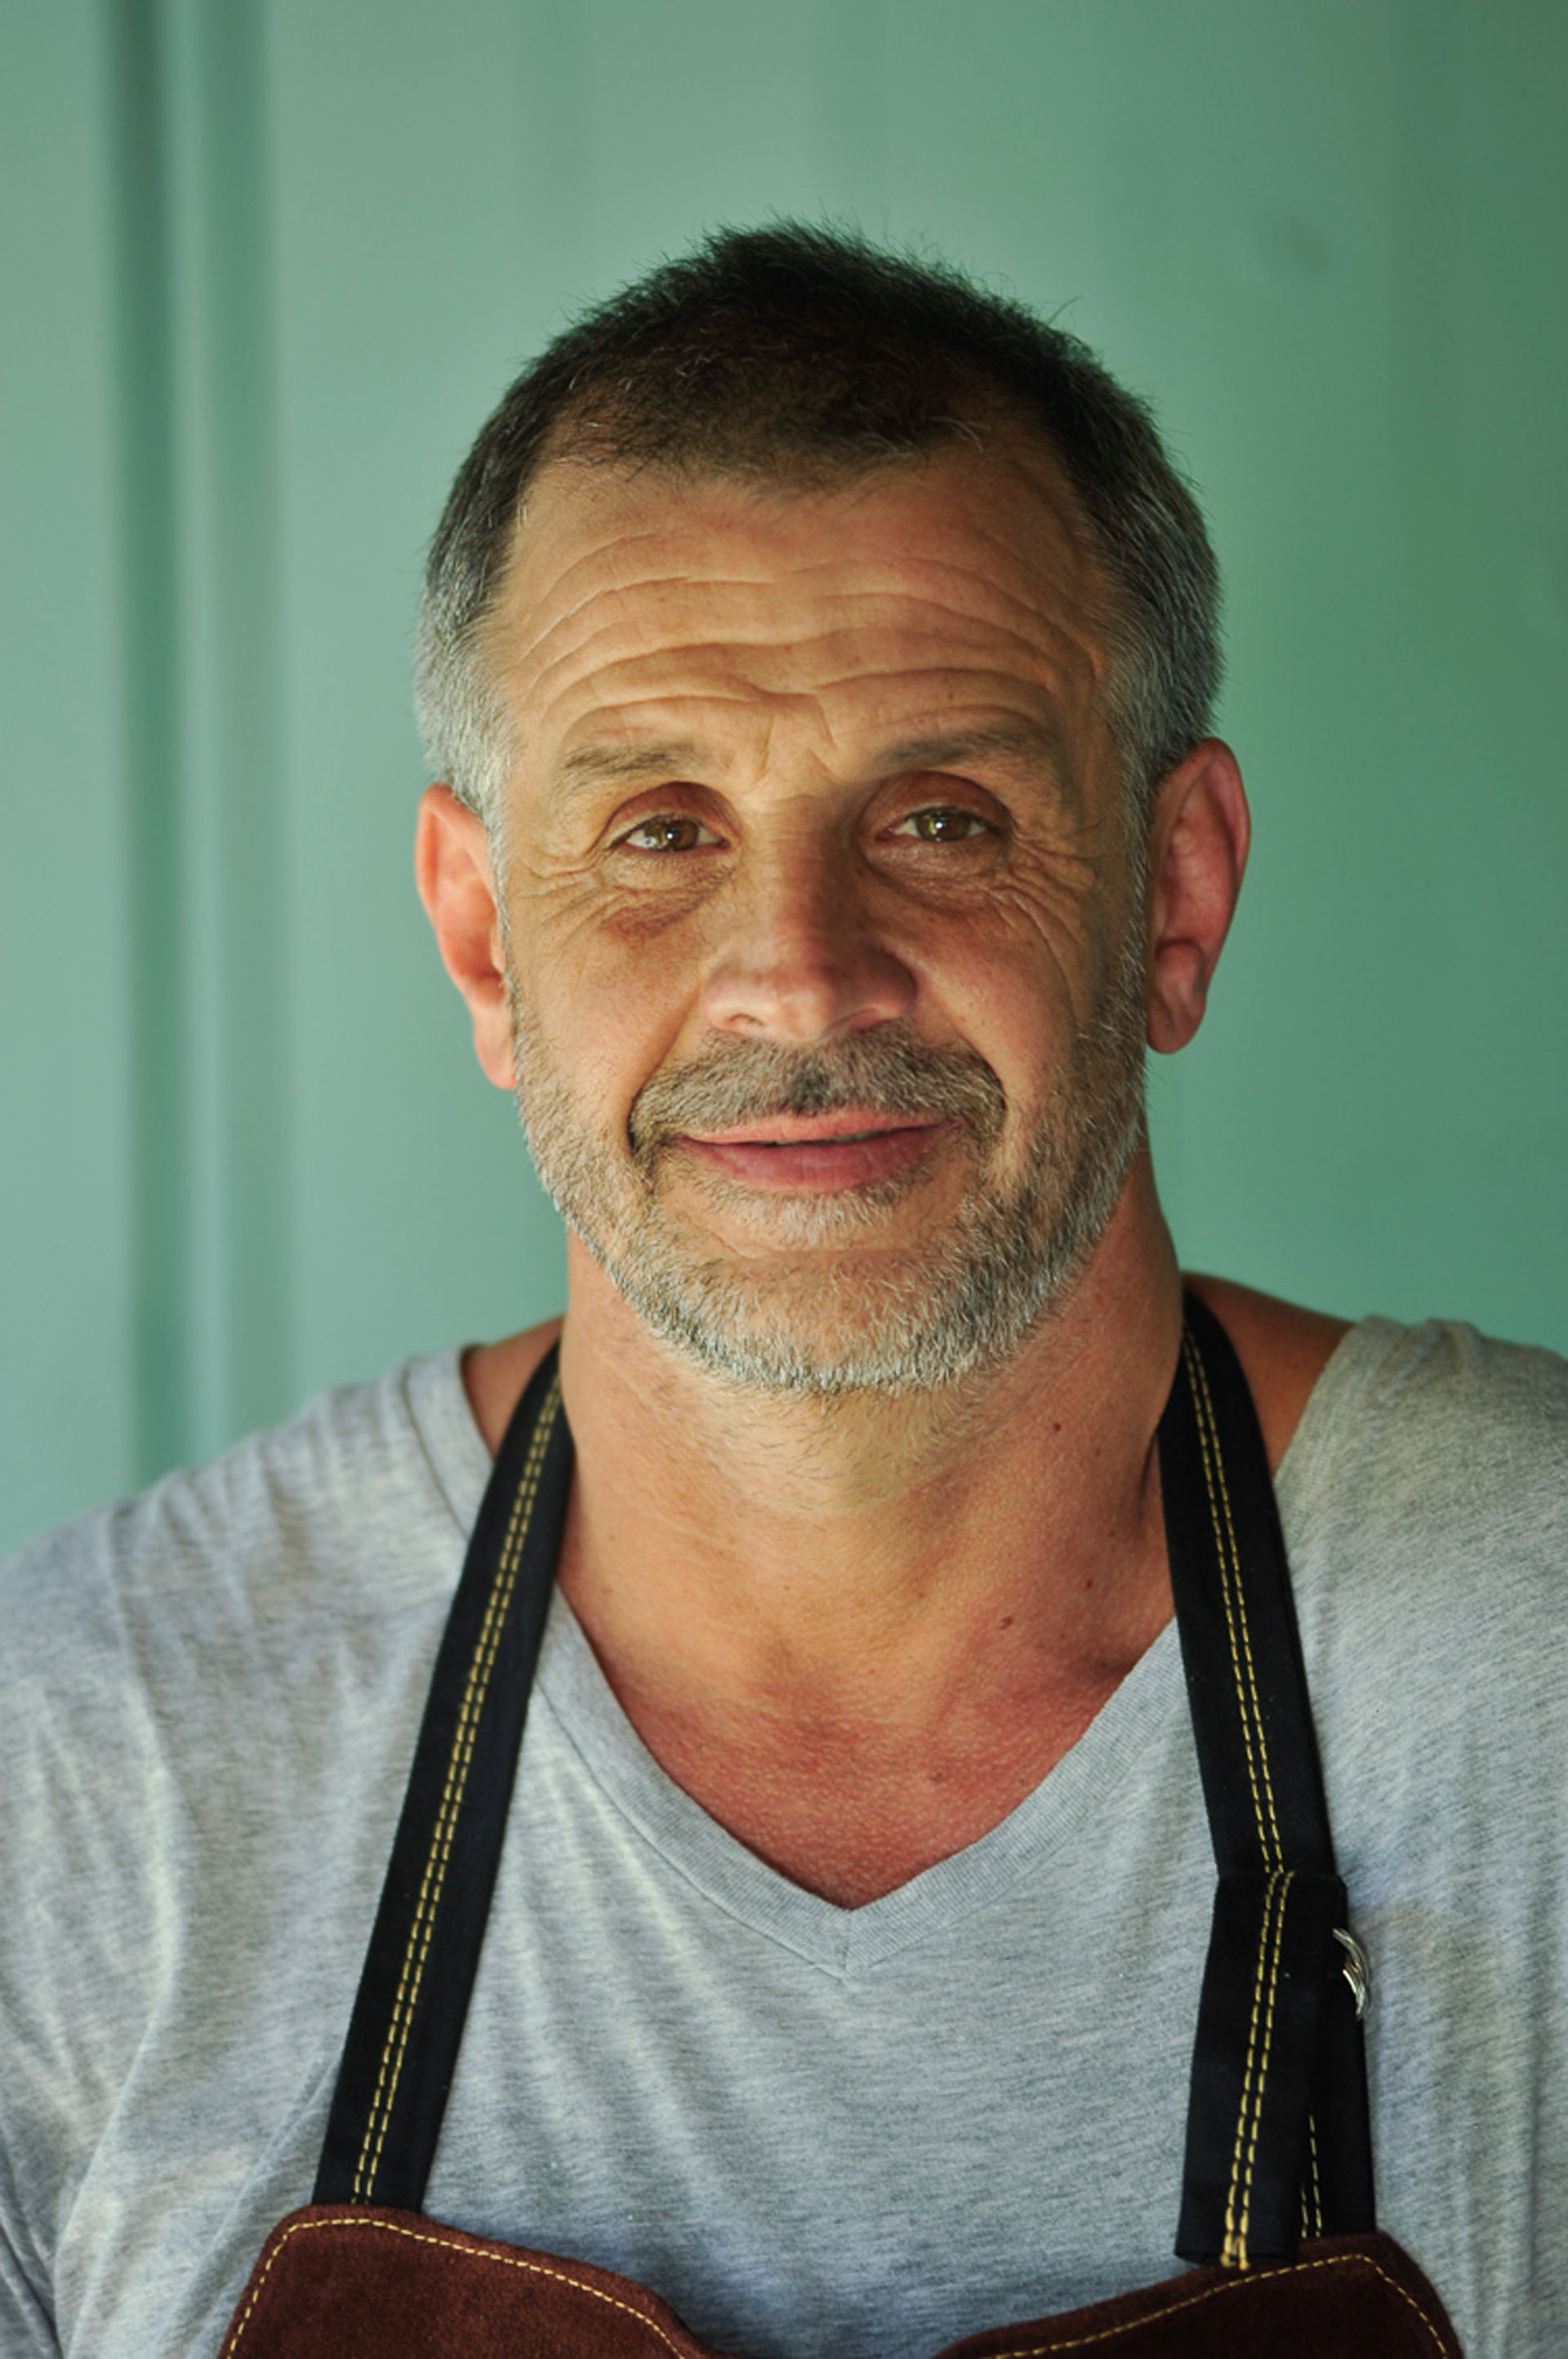 A sus 51 años, Christian Petersen se destaca en la cocina y en televisión